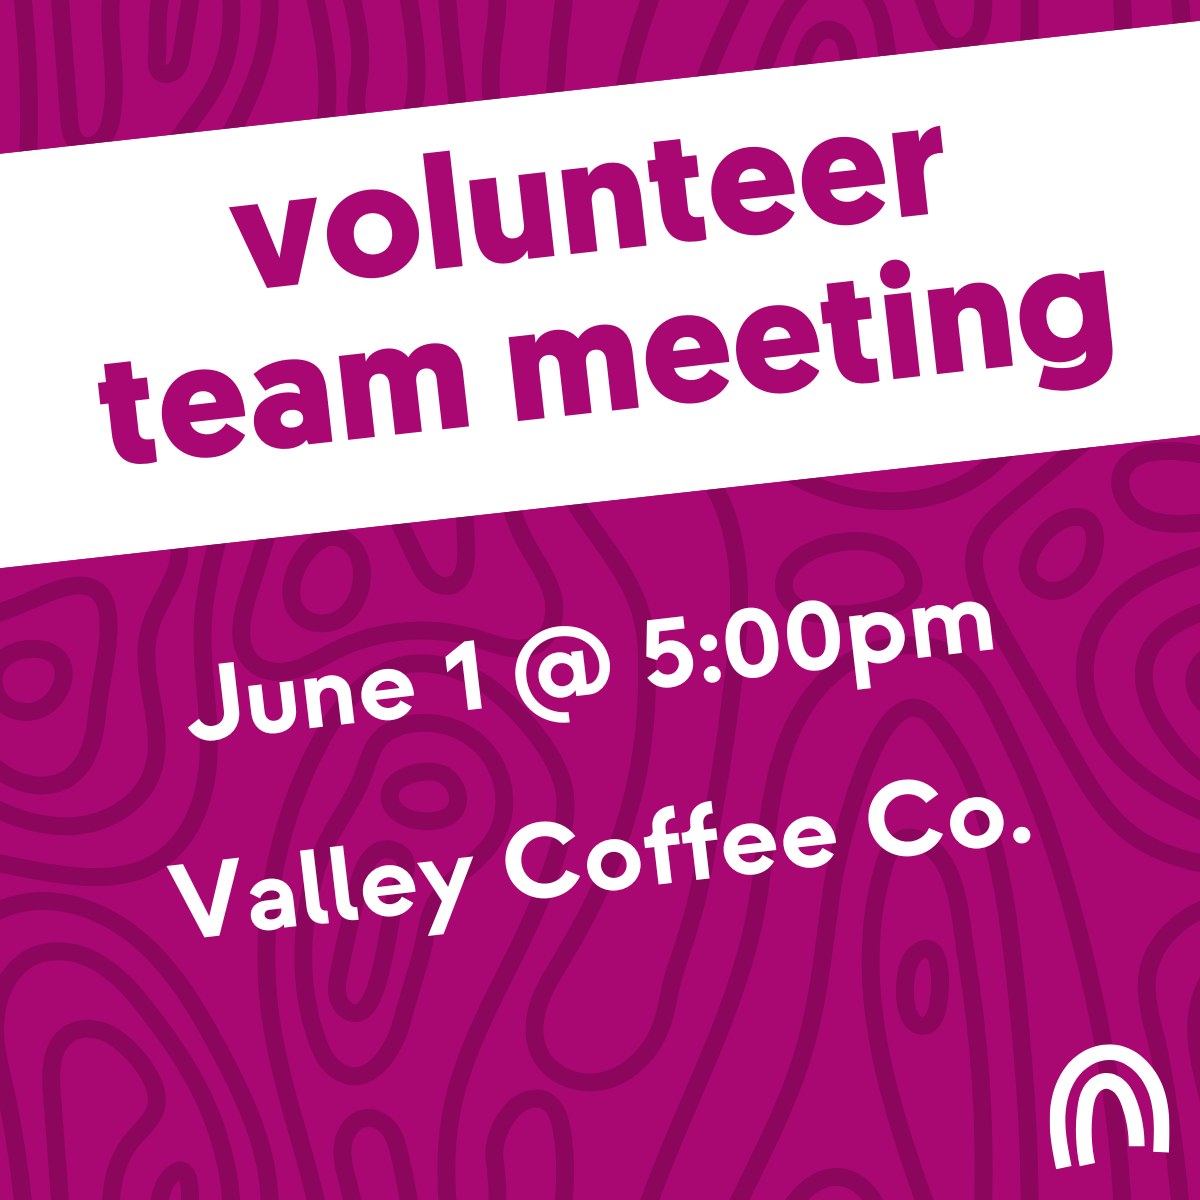 Volunteer Team Meeting. June 1 @ 5:00pm. Valley Coffee Co.